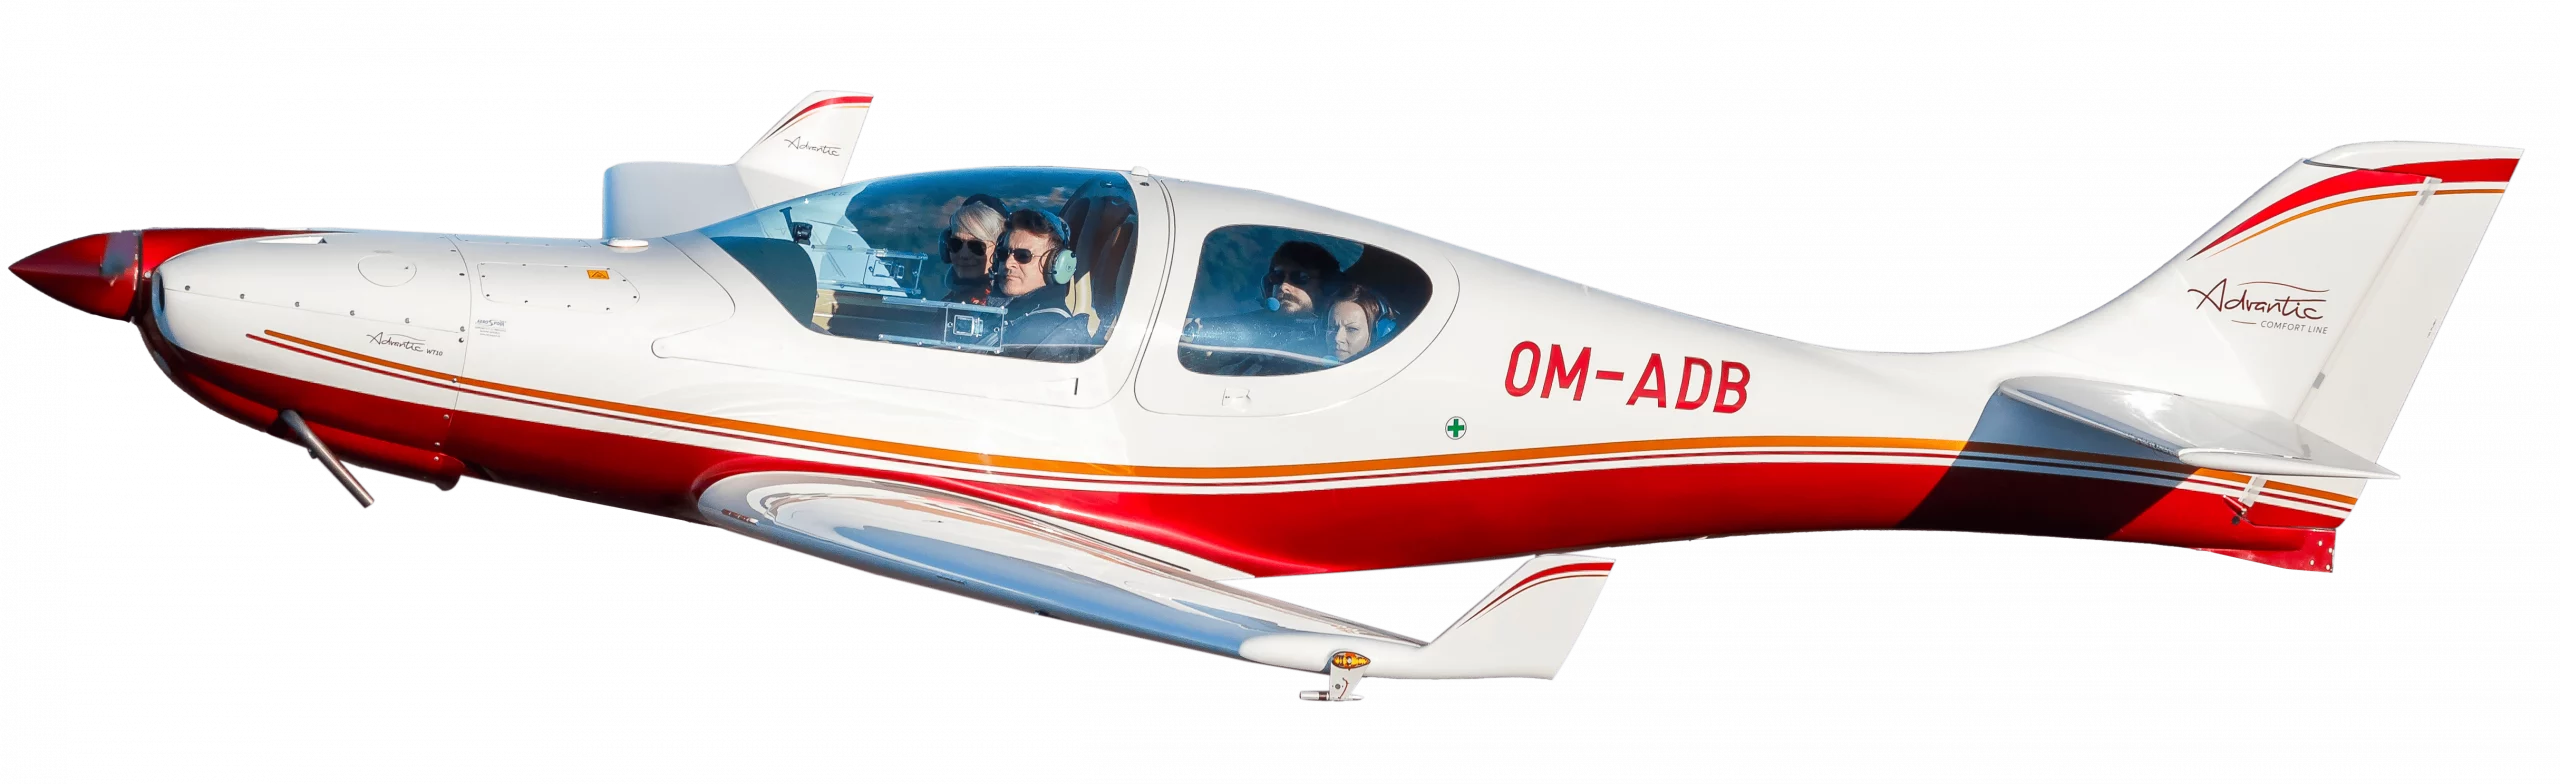 Le WT10 est un avion quadriplace en kit avec un design proche du Dynamic.